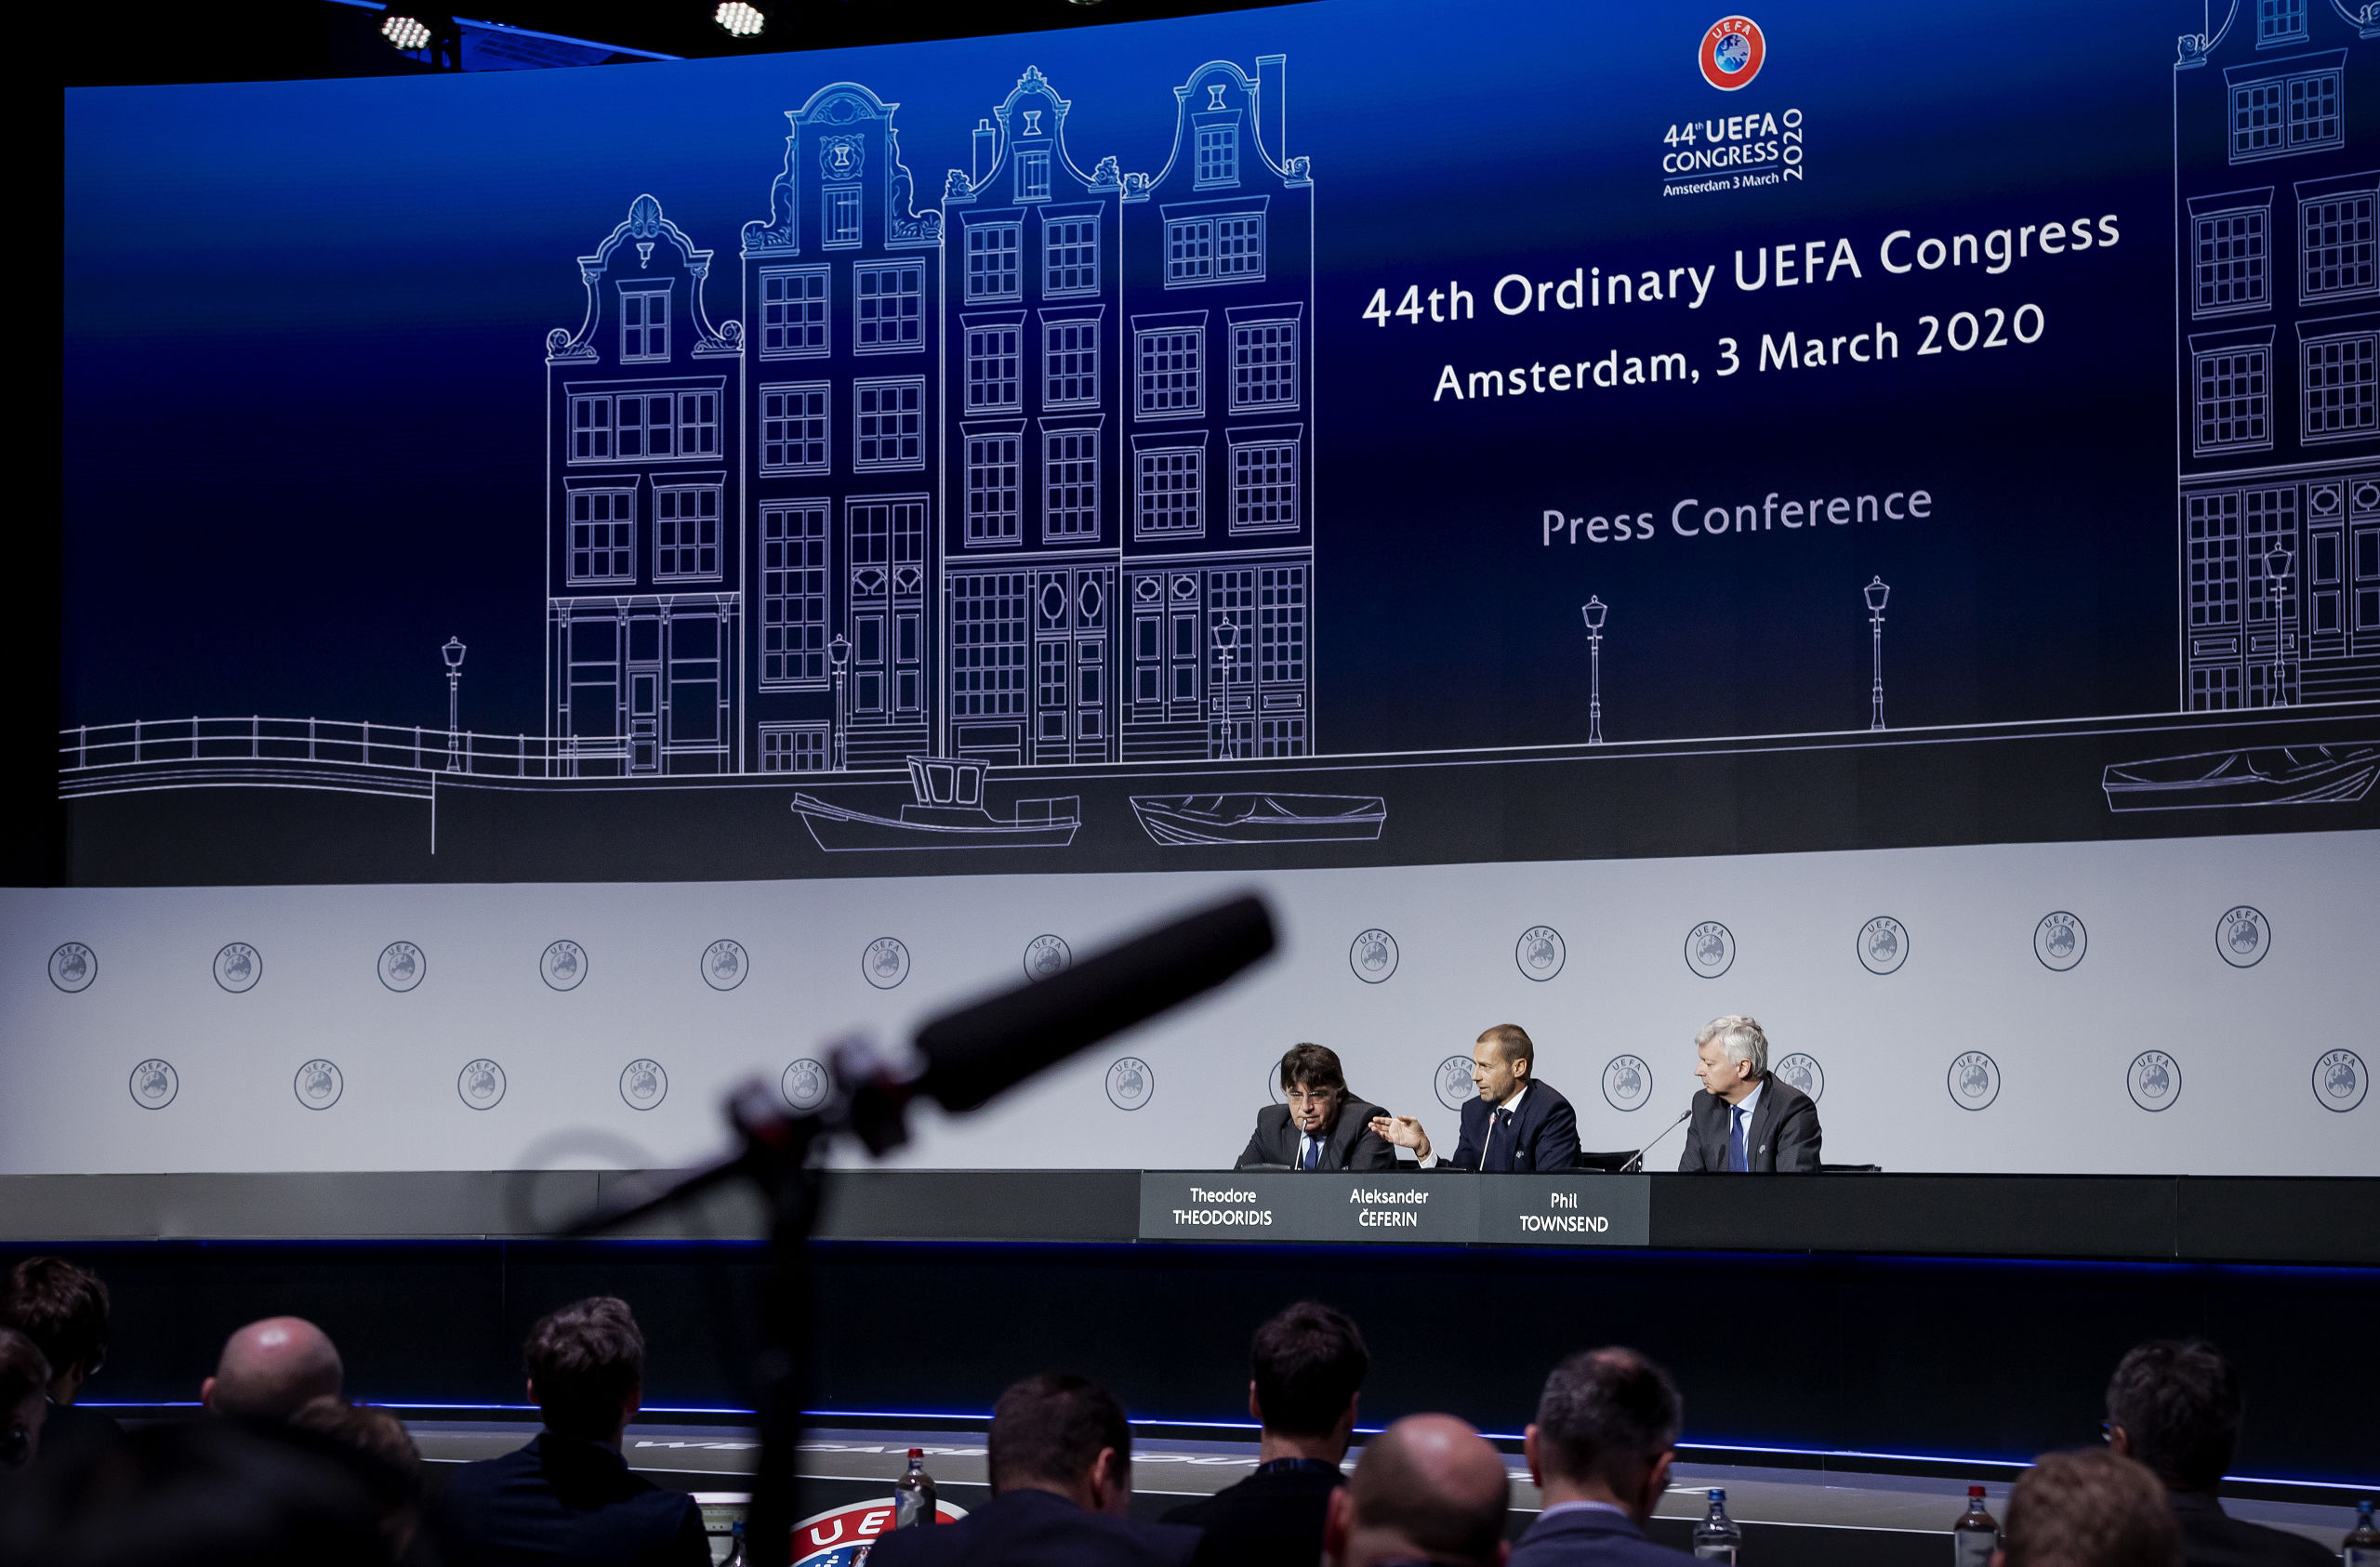 Persconferentie op het UEFA-congres in de Beurs van Berlage